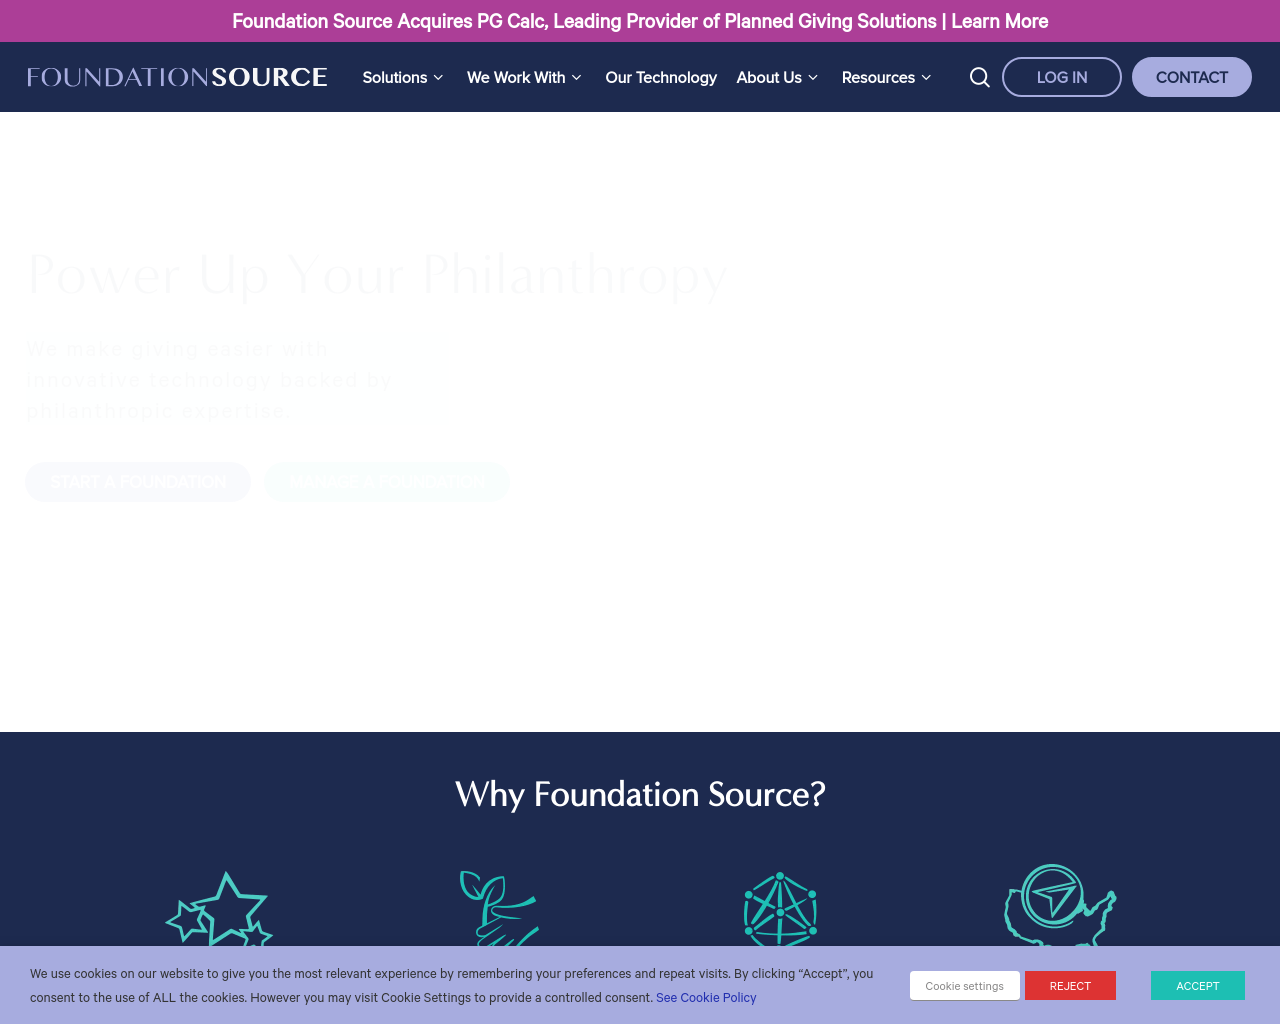 foundationsource.com